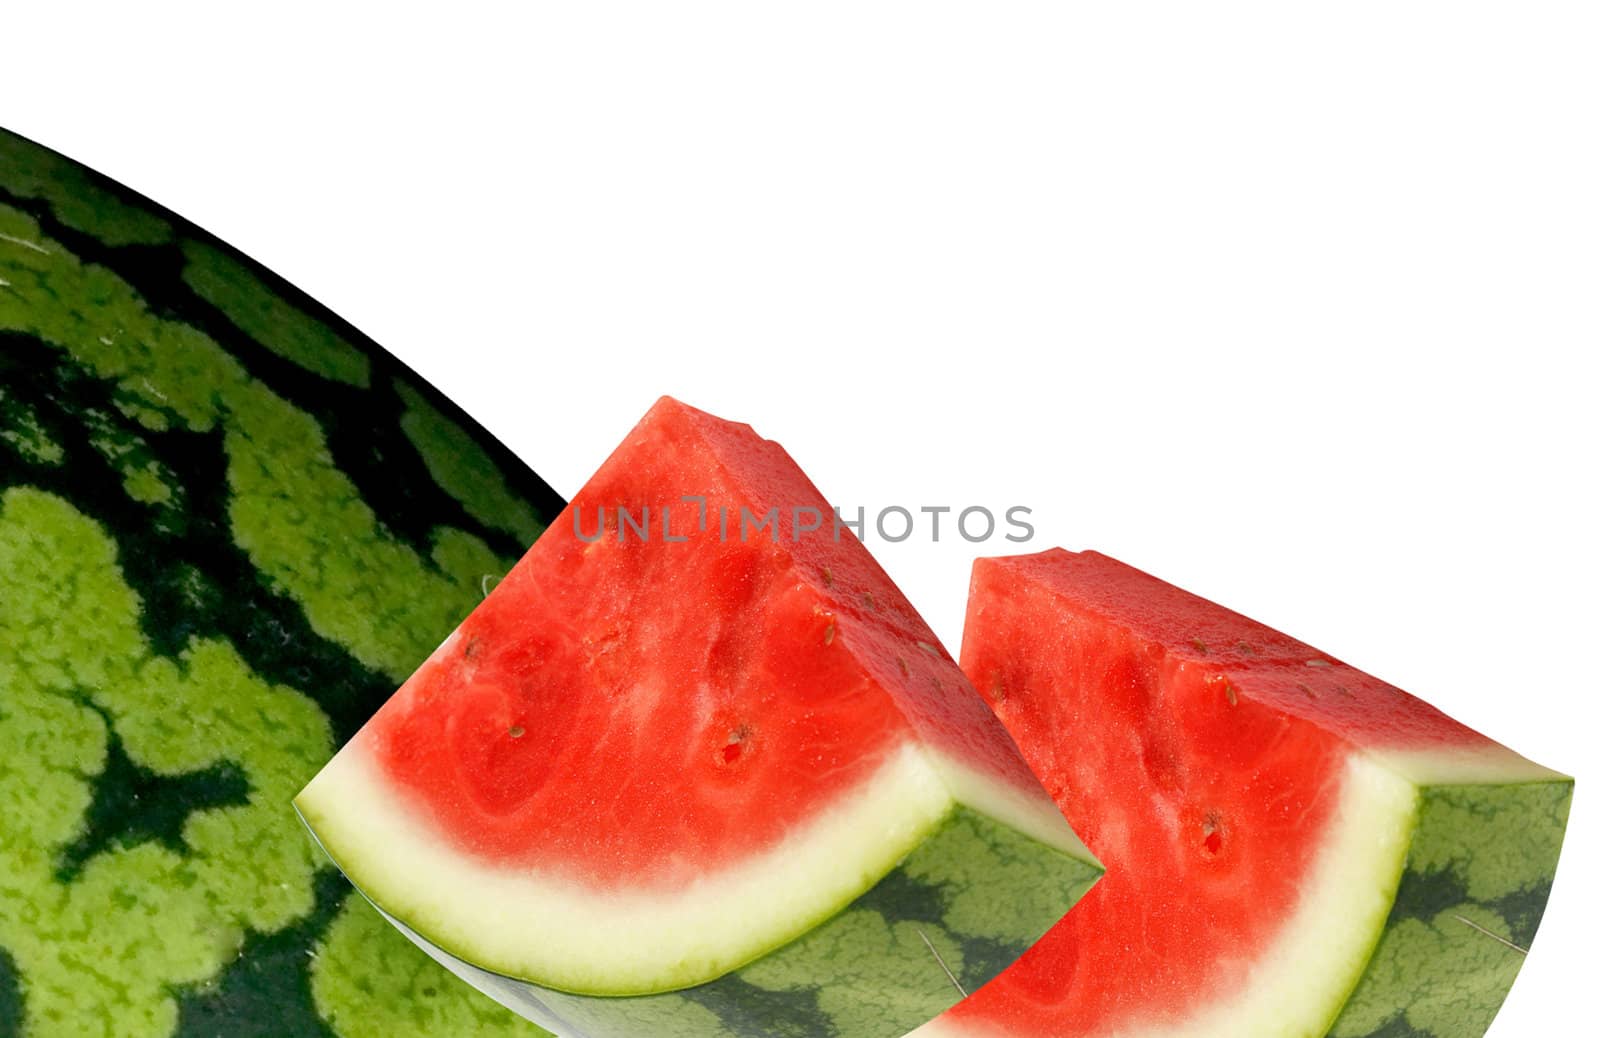 Watermelon by leeser